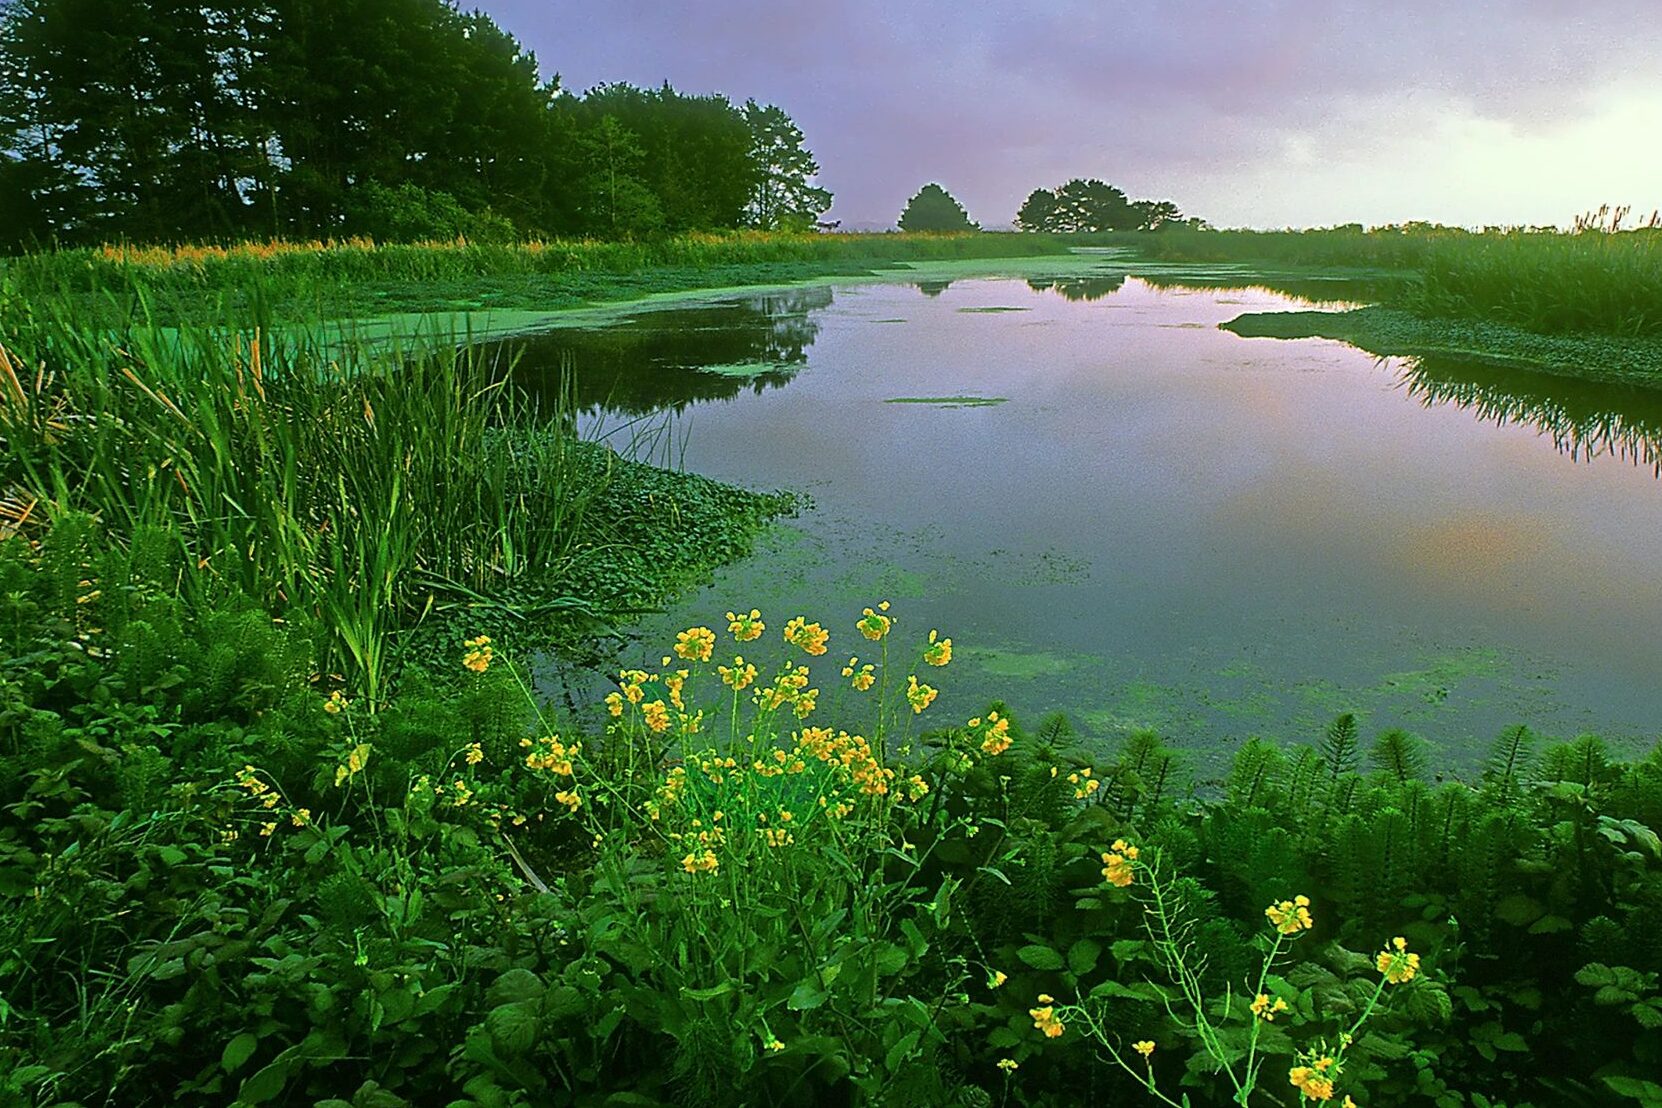 Vegetation in Pond.